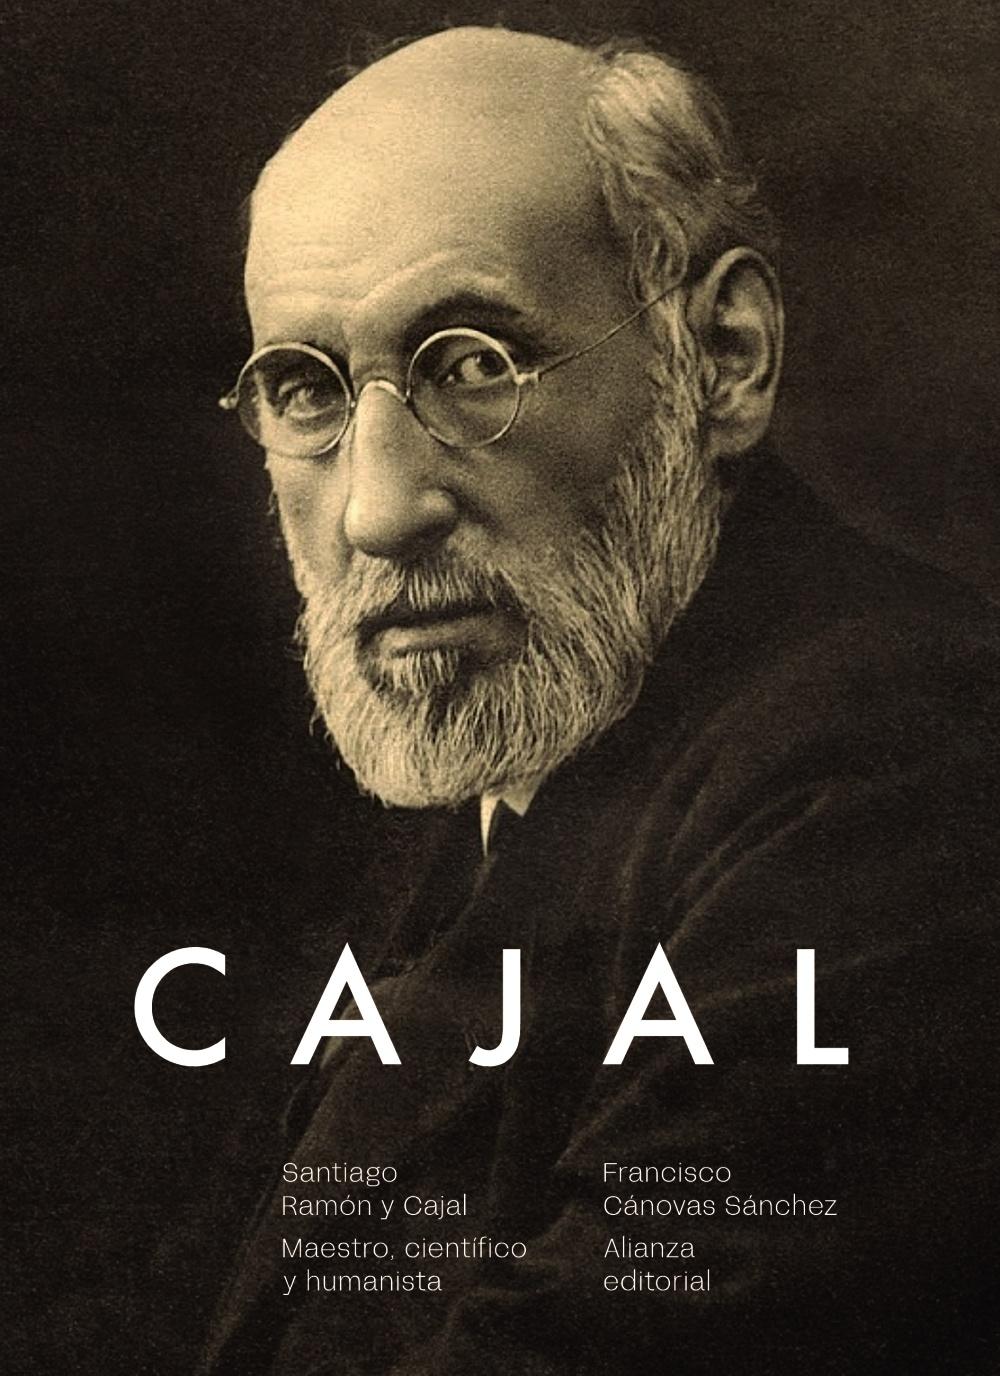 Santiago Ramón y Cajal "Maestro, científico y humanista"